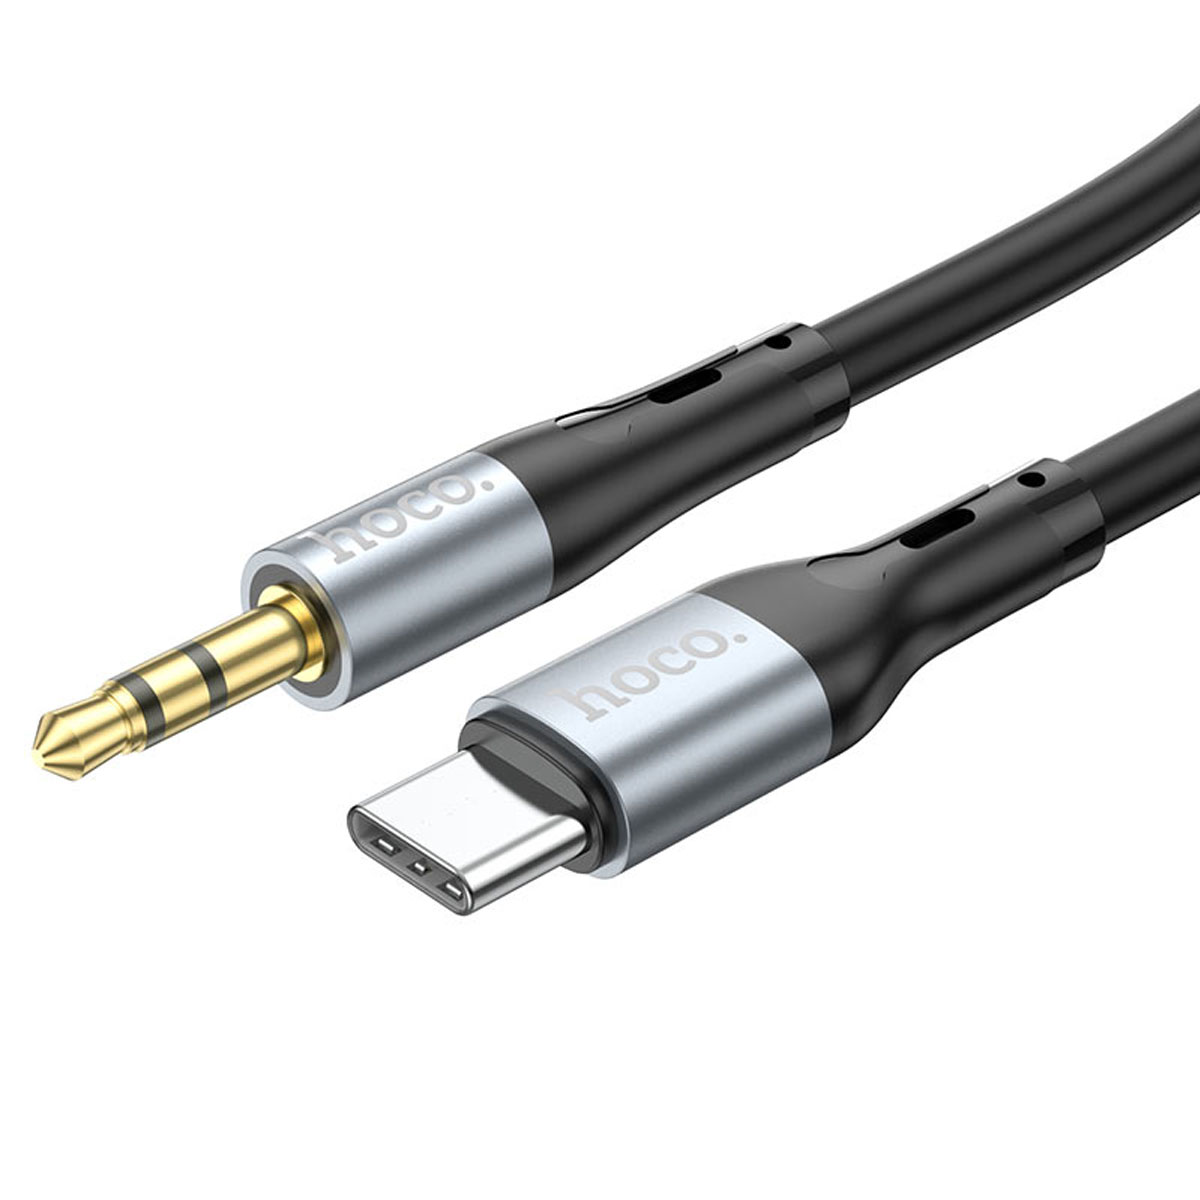 Аудио кабель, переходник HOCO UPA22 USB Type C на AUX Jack 3.5 mm, длина 1 метр, цвет черный